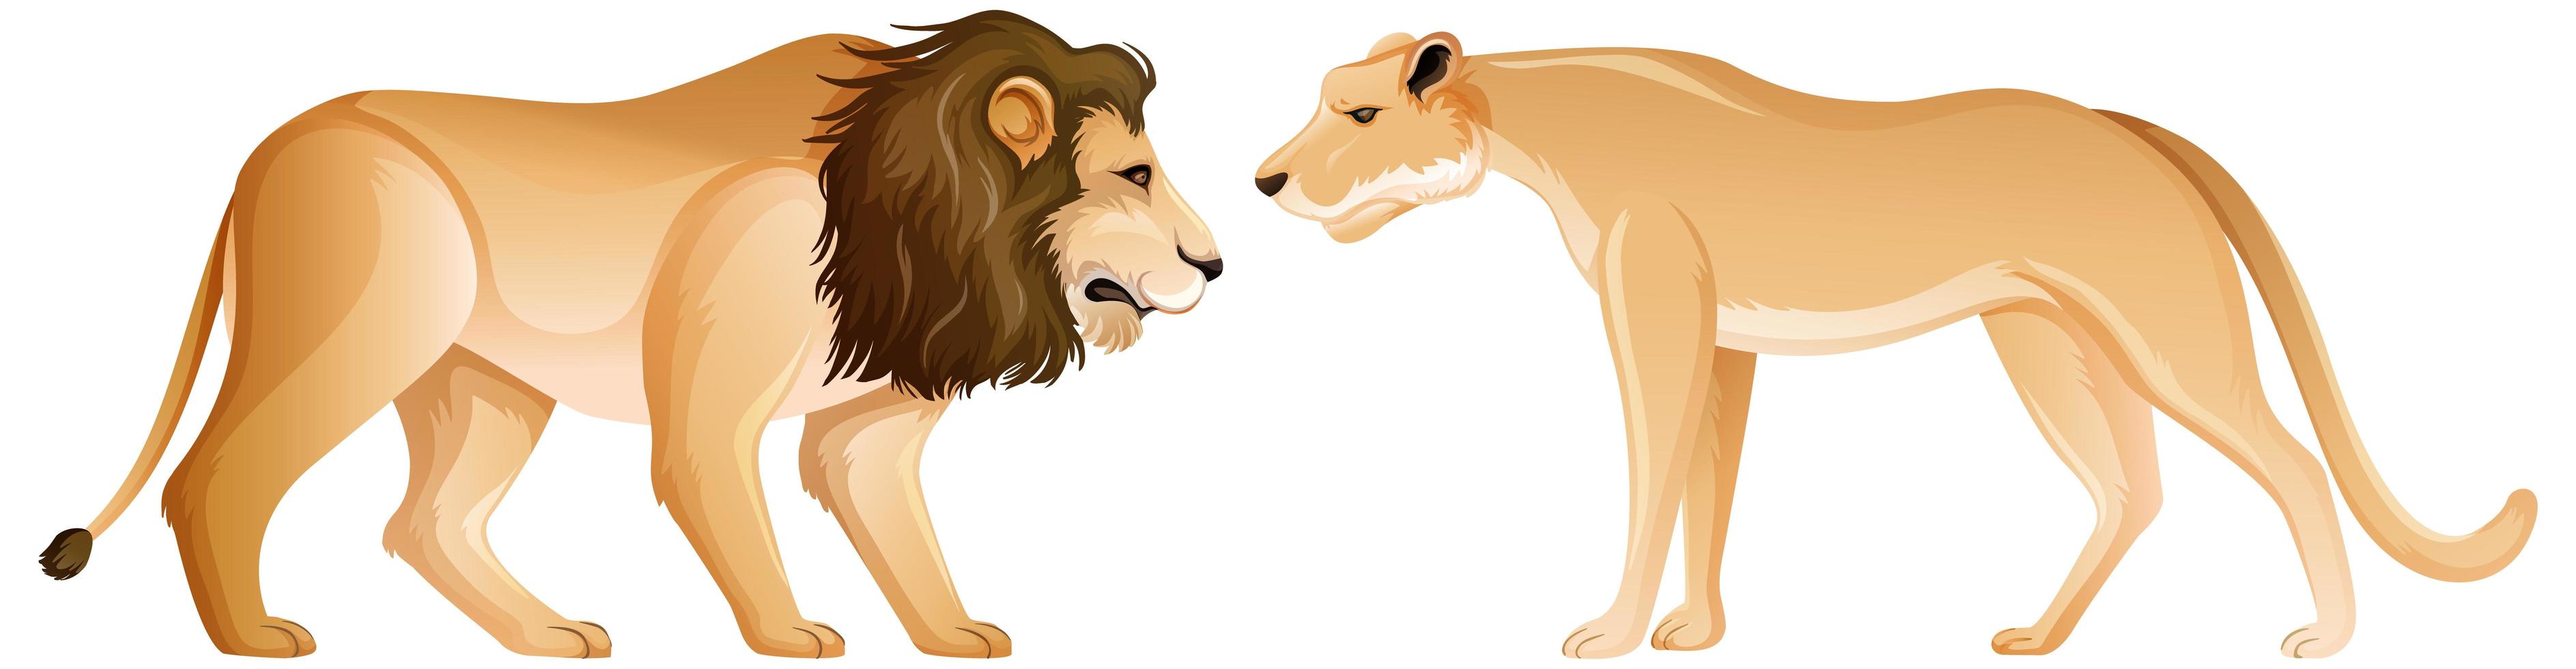 Löwe und Löwin in stehender Position auf weißem Hintergrund vektor